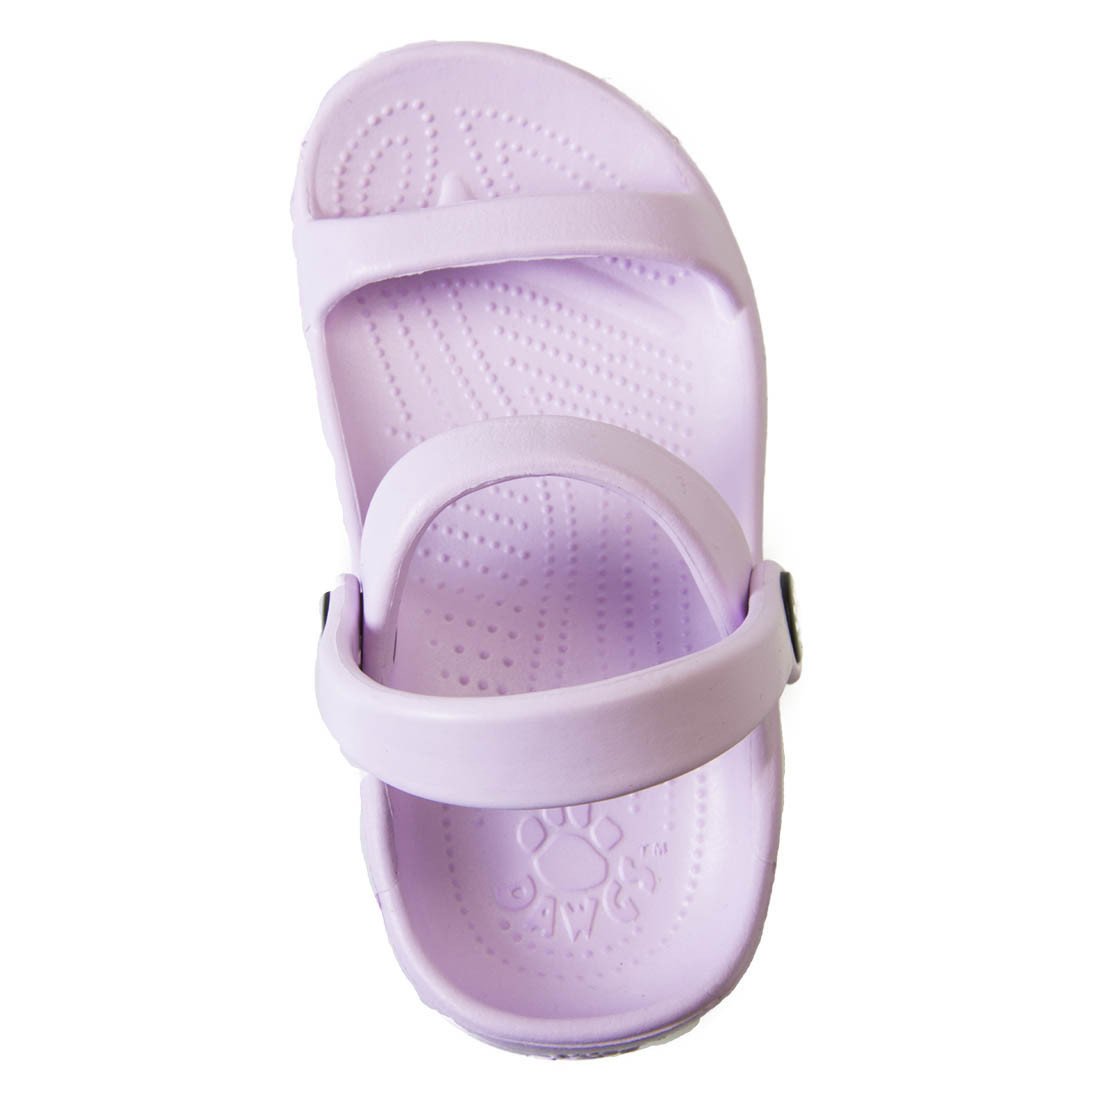 Kids' 3-Strap Sandals